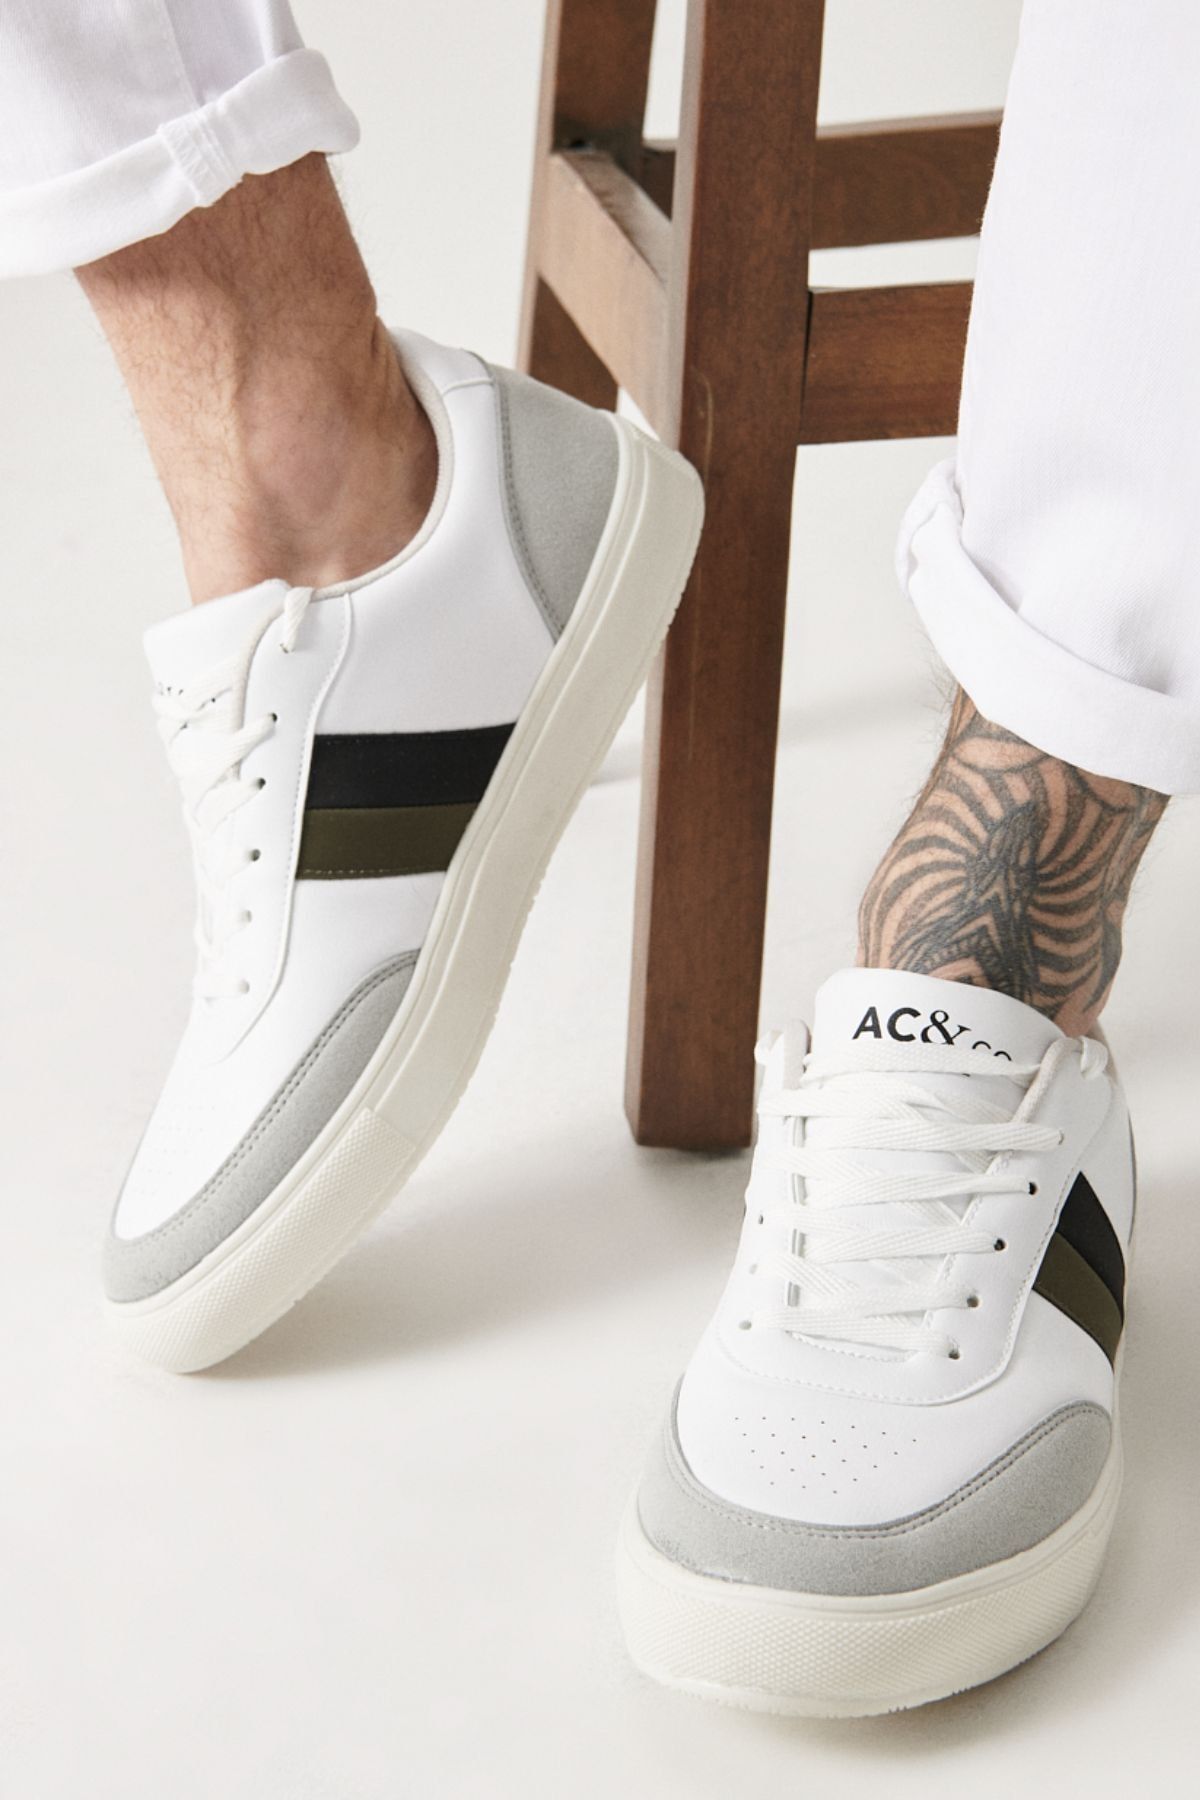 AC&Co / Altınyıldız Classics Erkek BEYAZ-SIYAH-GRI Casual Spor Sneaker Ayakkabı